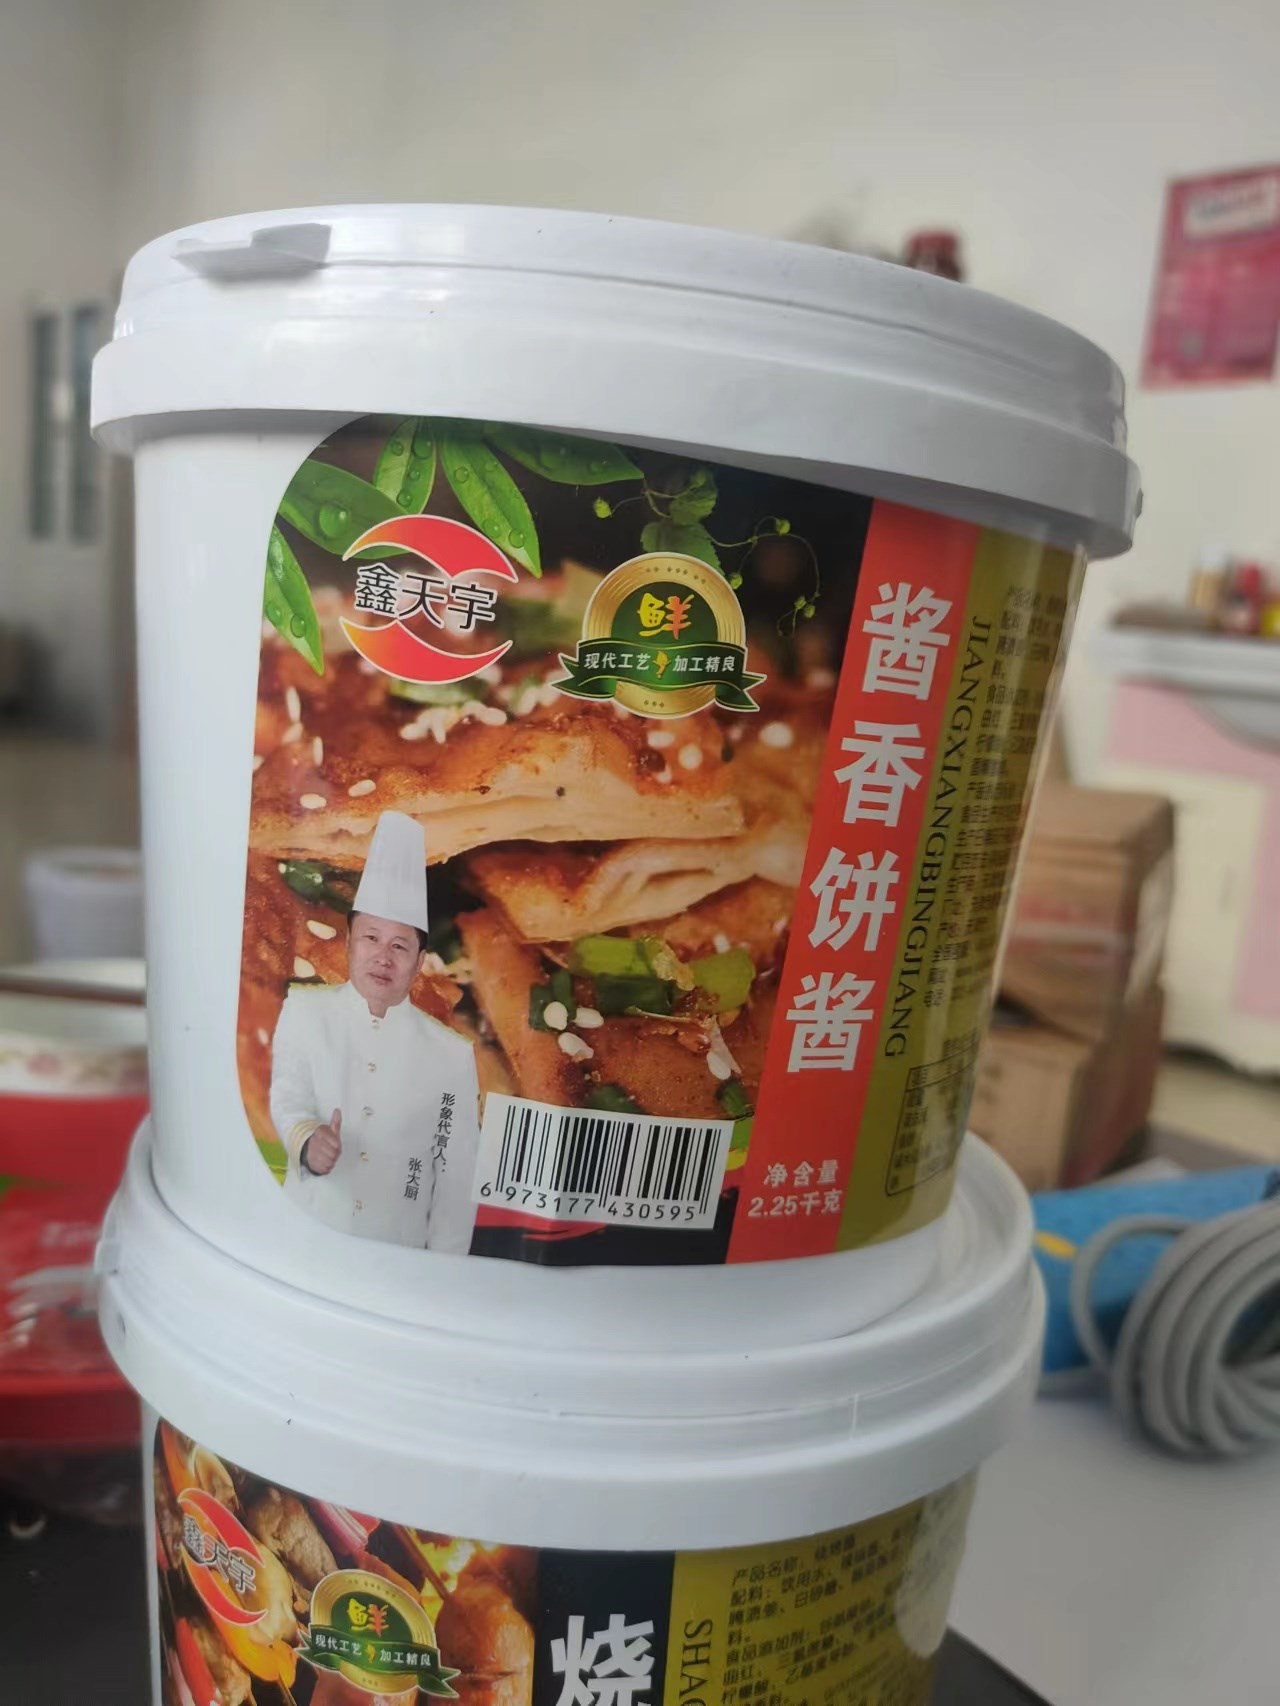 鑫合顺酱香饼酱2.25kg.jpg